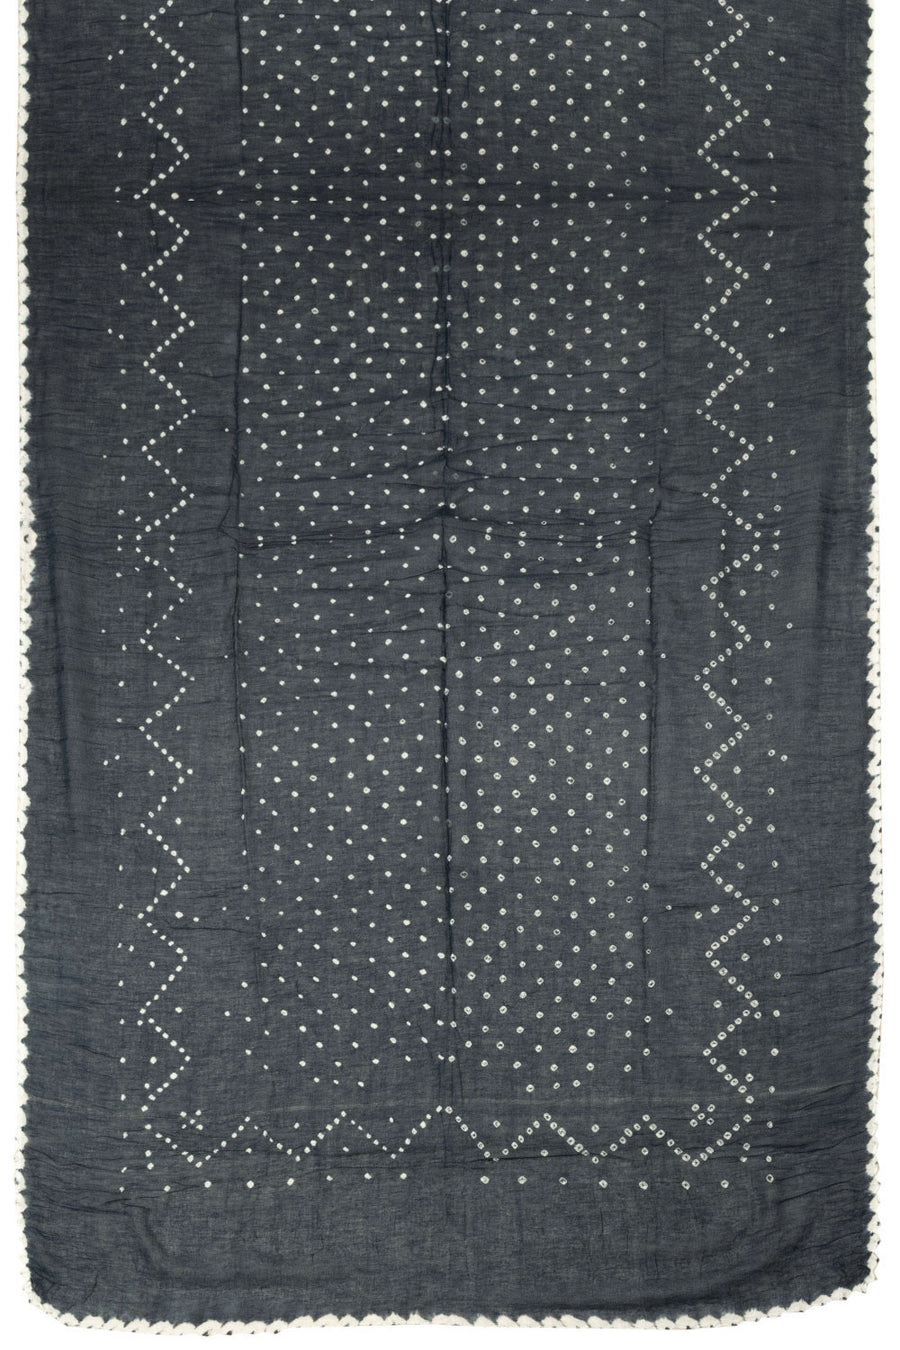 Black Bandhani Salwar Suit Material - Avishya